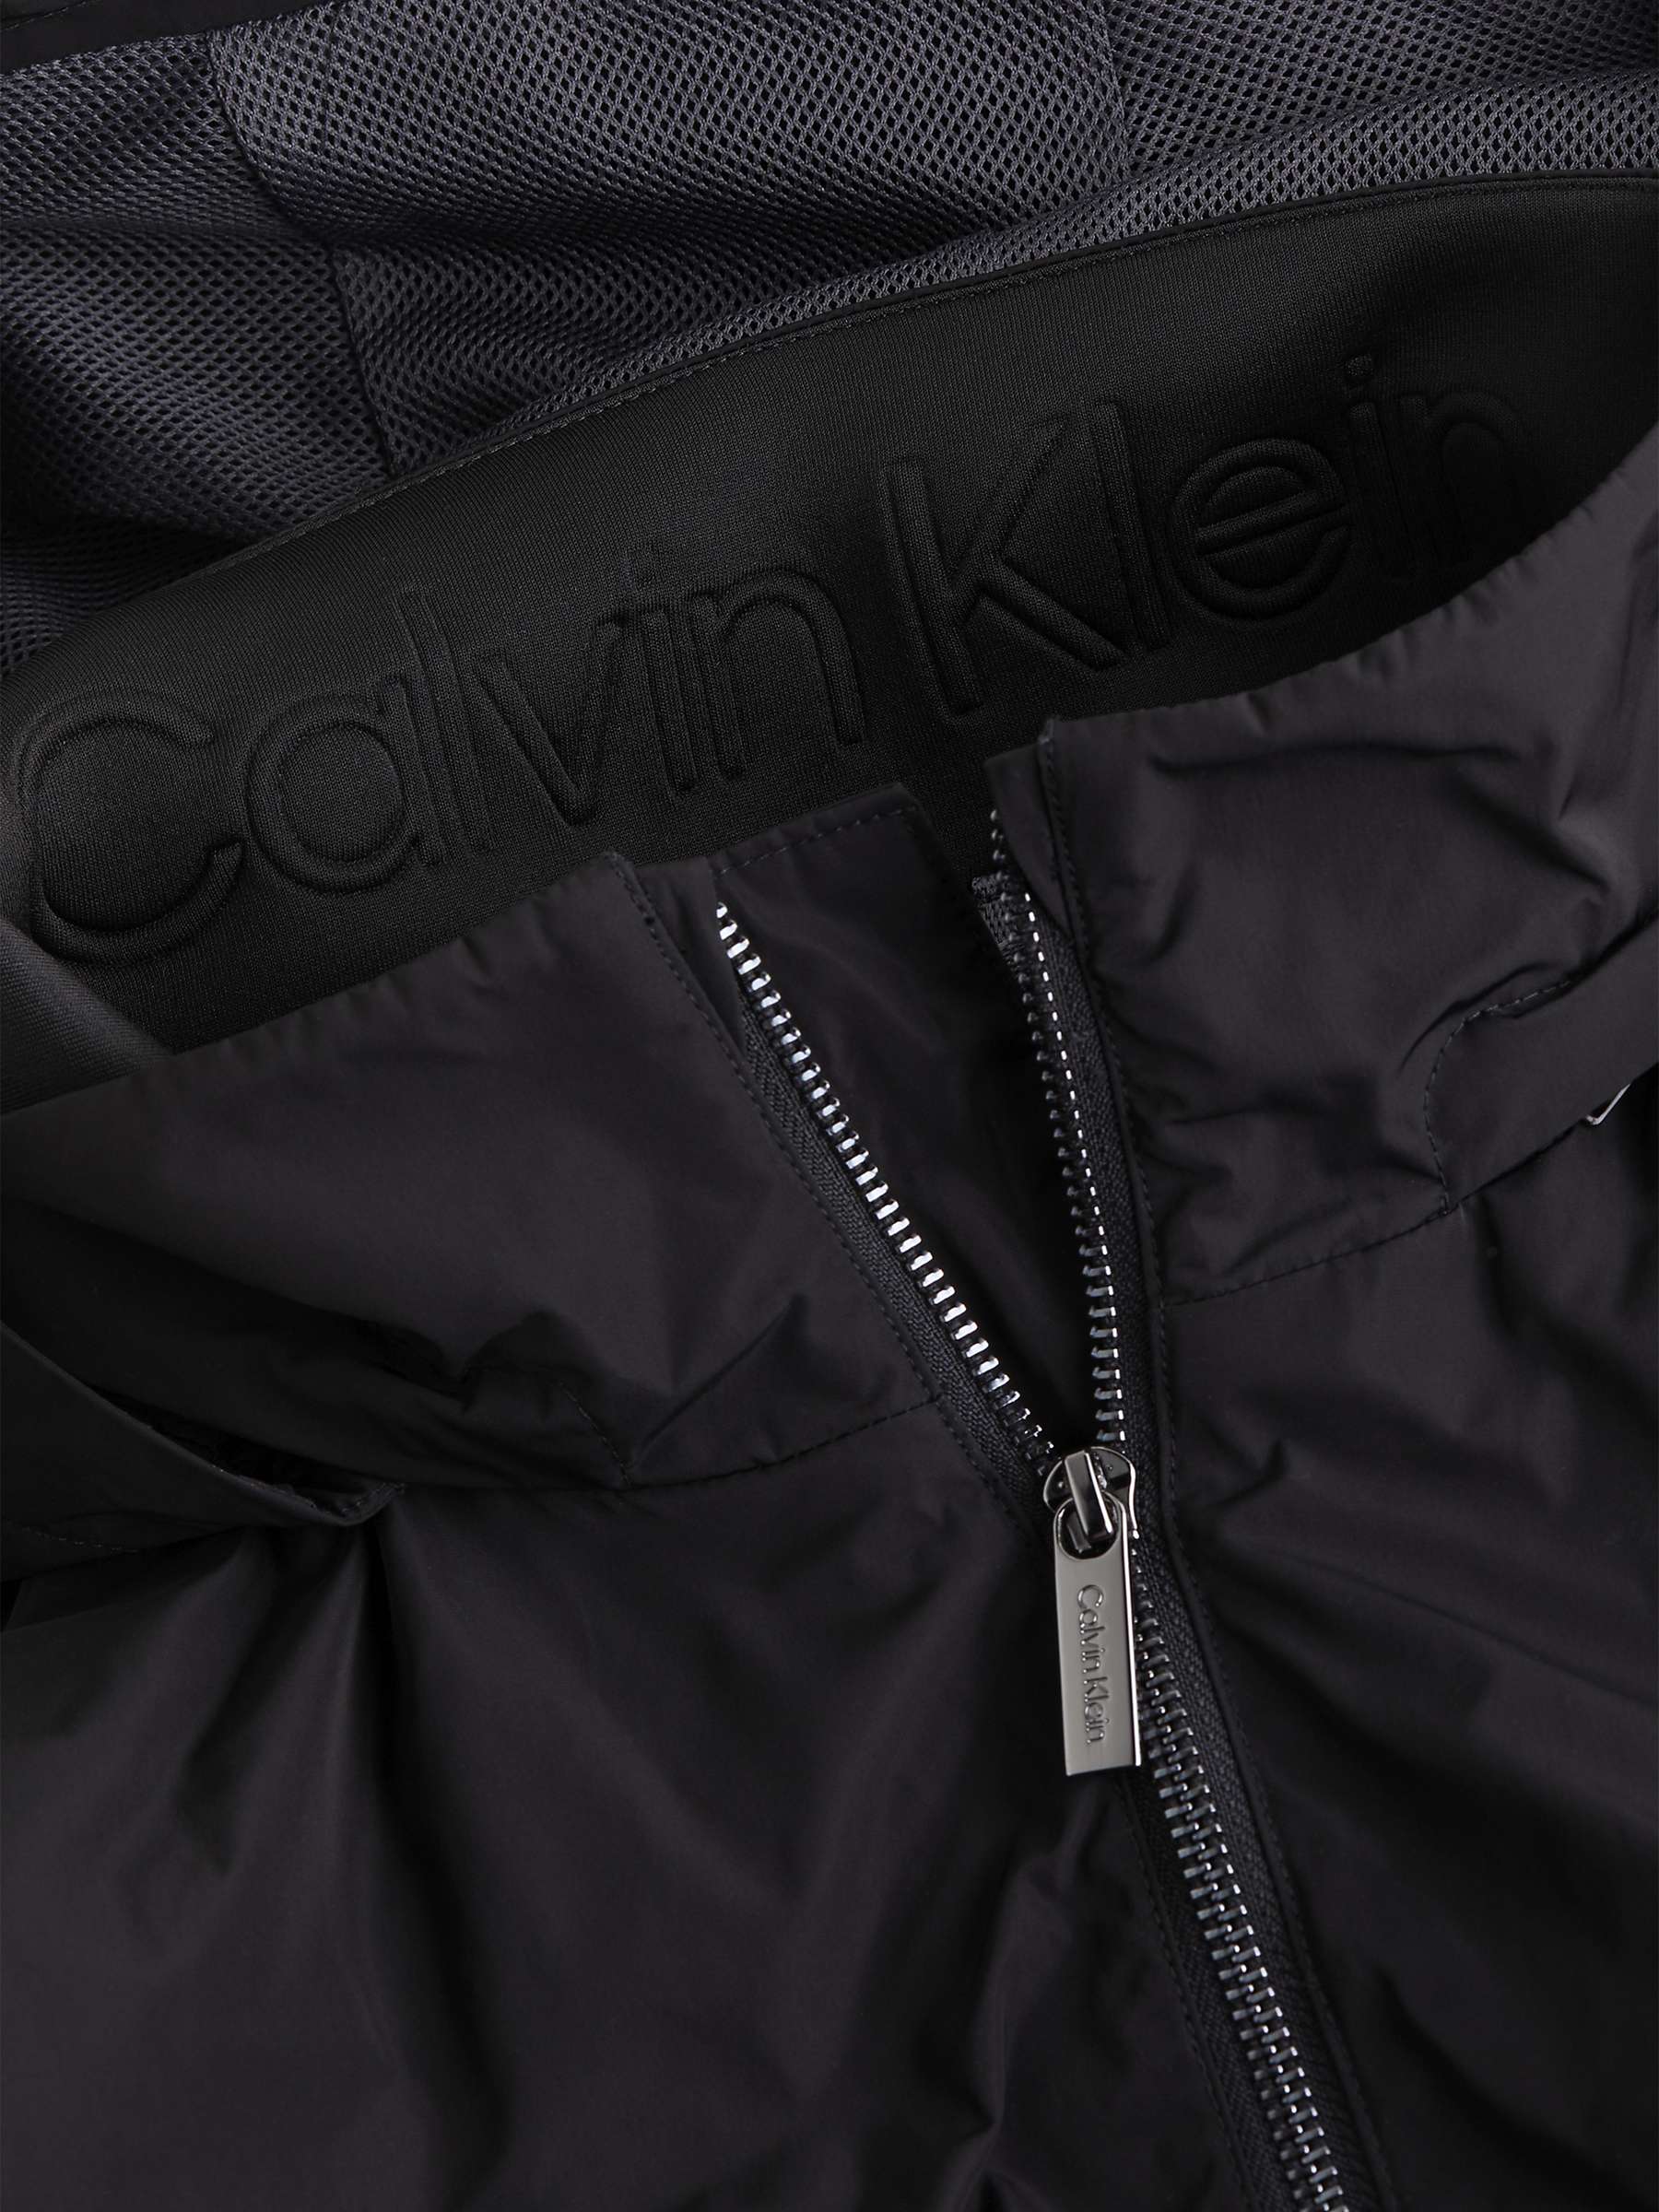 Buy Calvin Klein Modern Hooded Windbreaker Jacket, Ck Black Online at johnlewis.com